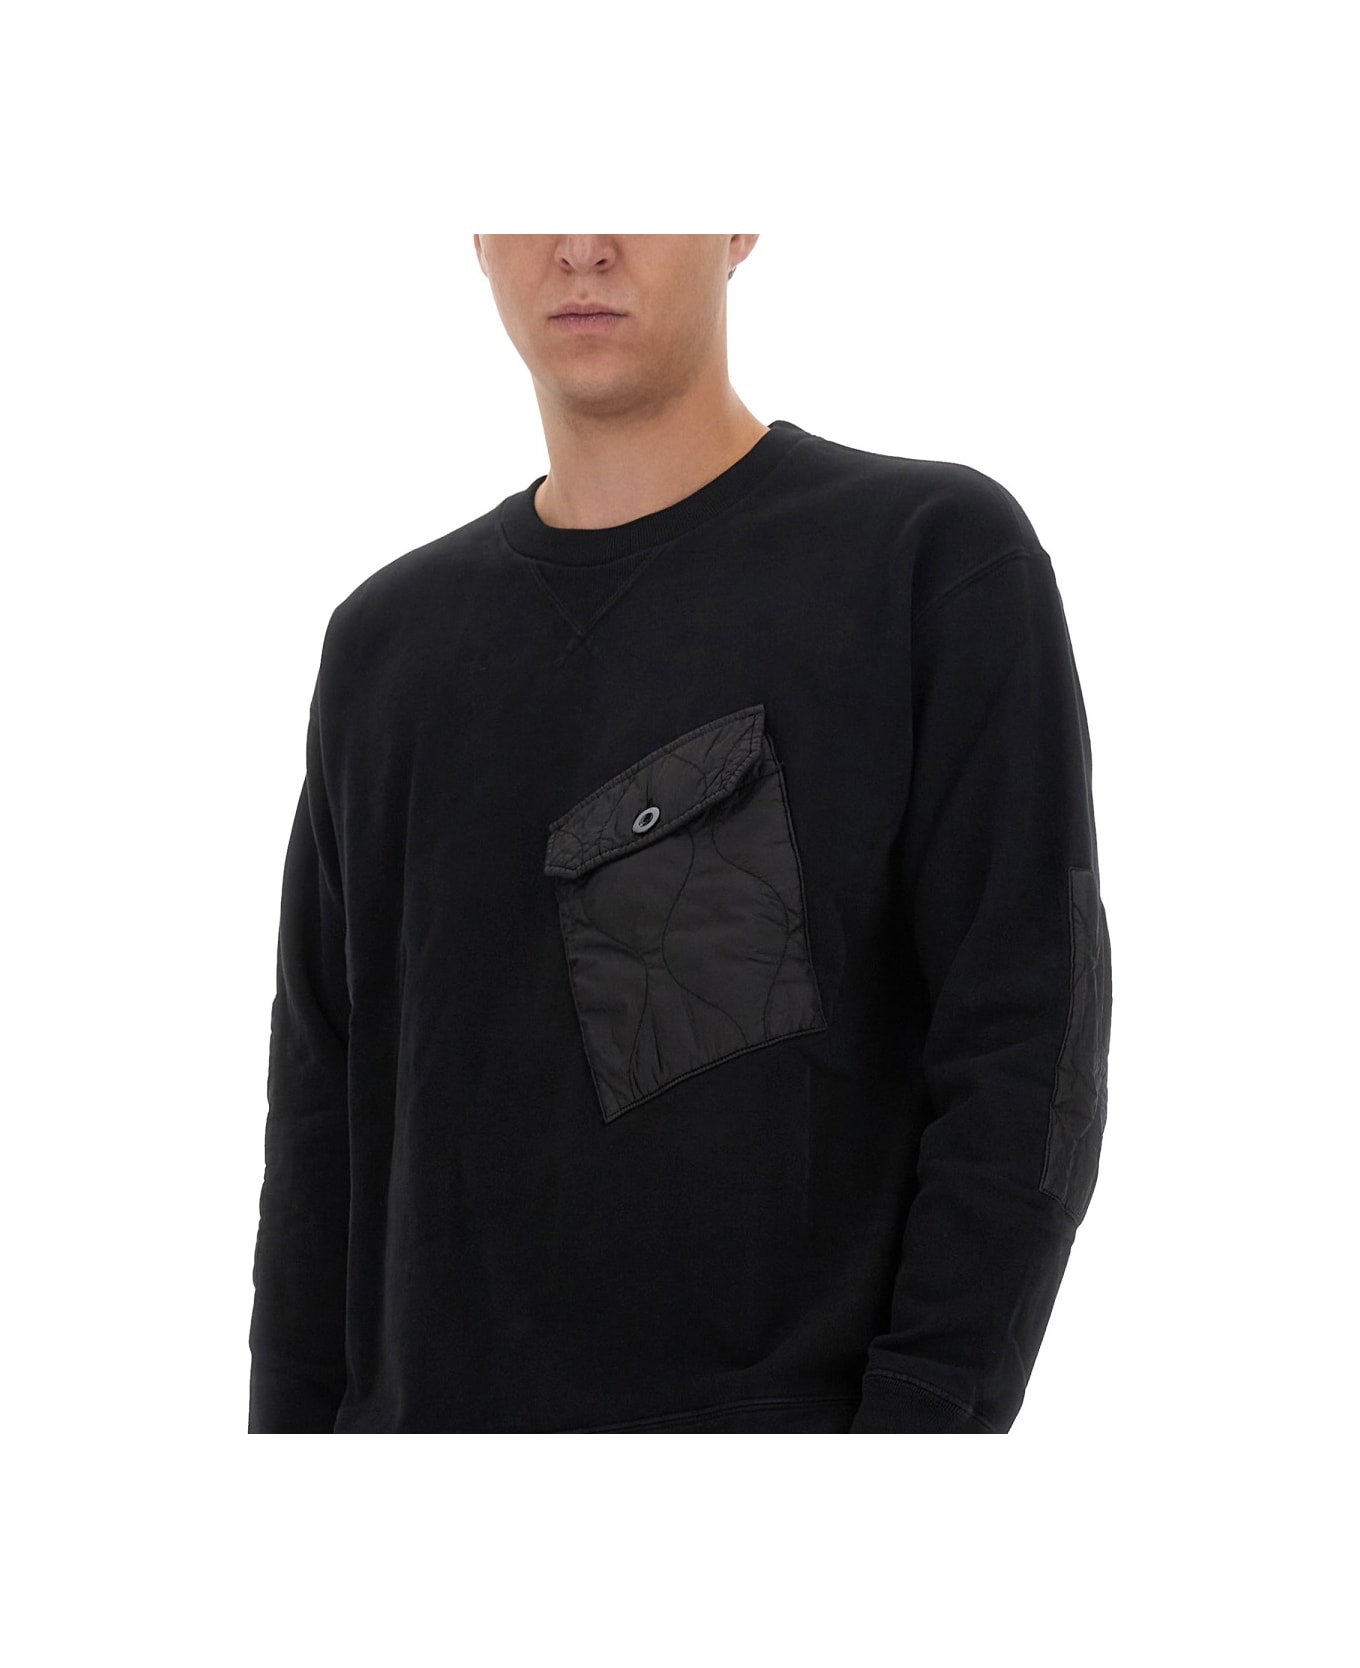 Ten C Sweatshirt With Logo - BLACK